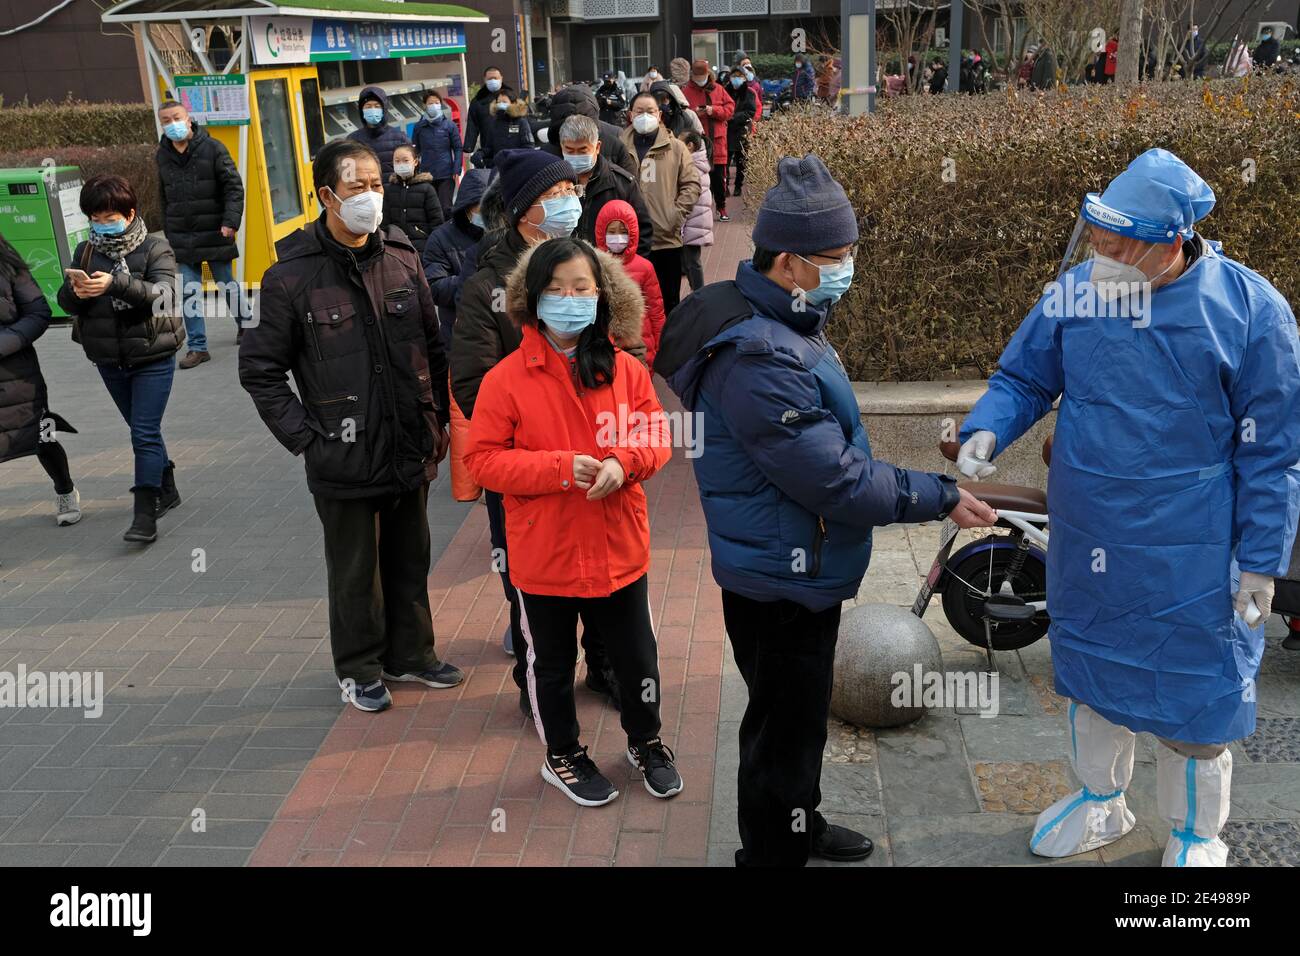 Le persone si allineano per ottenere il loro test di acido nucleico dopo l'epidemia di coronavirus (COVID-19) a Pechino, Cina 22 gennaio 2021. Foto Stock